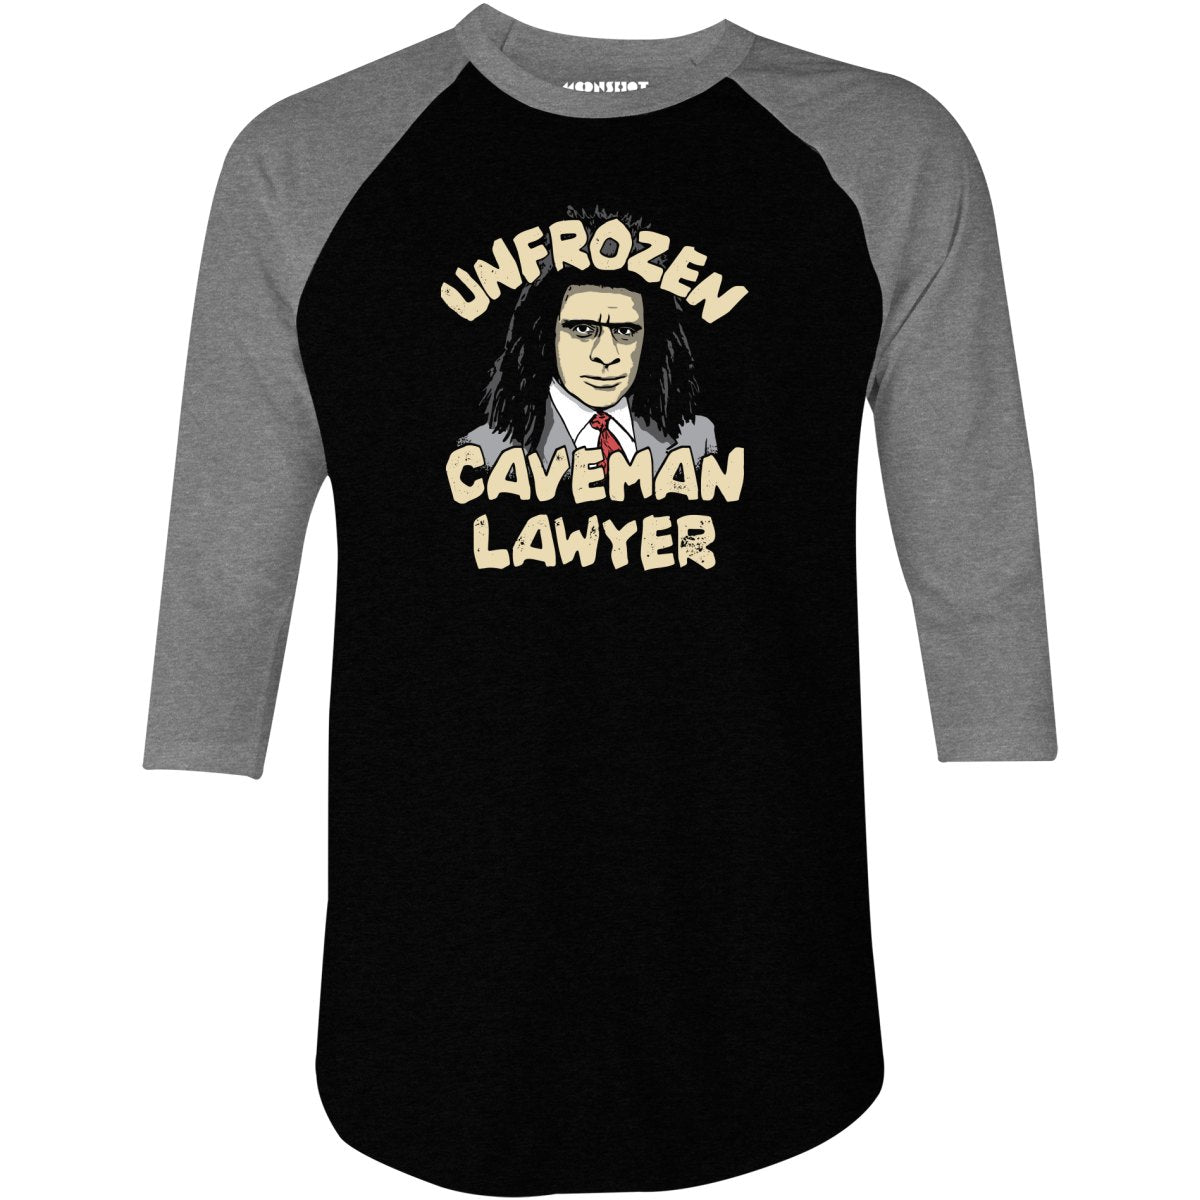 Unfrozen Caveman Lawyer - 3/4 Sleeve Raglan T-Shirt